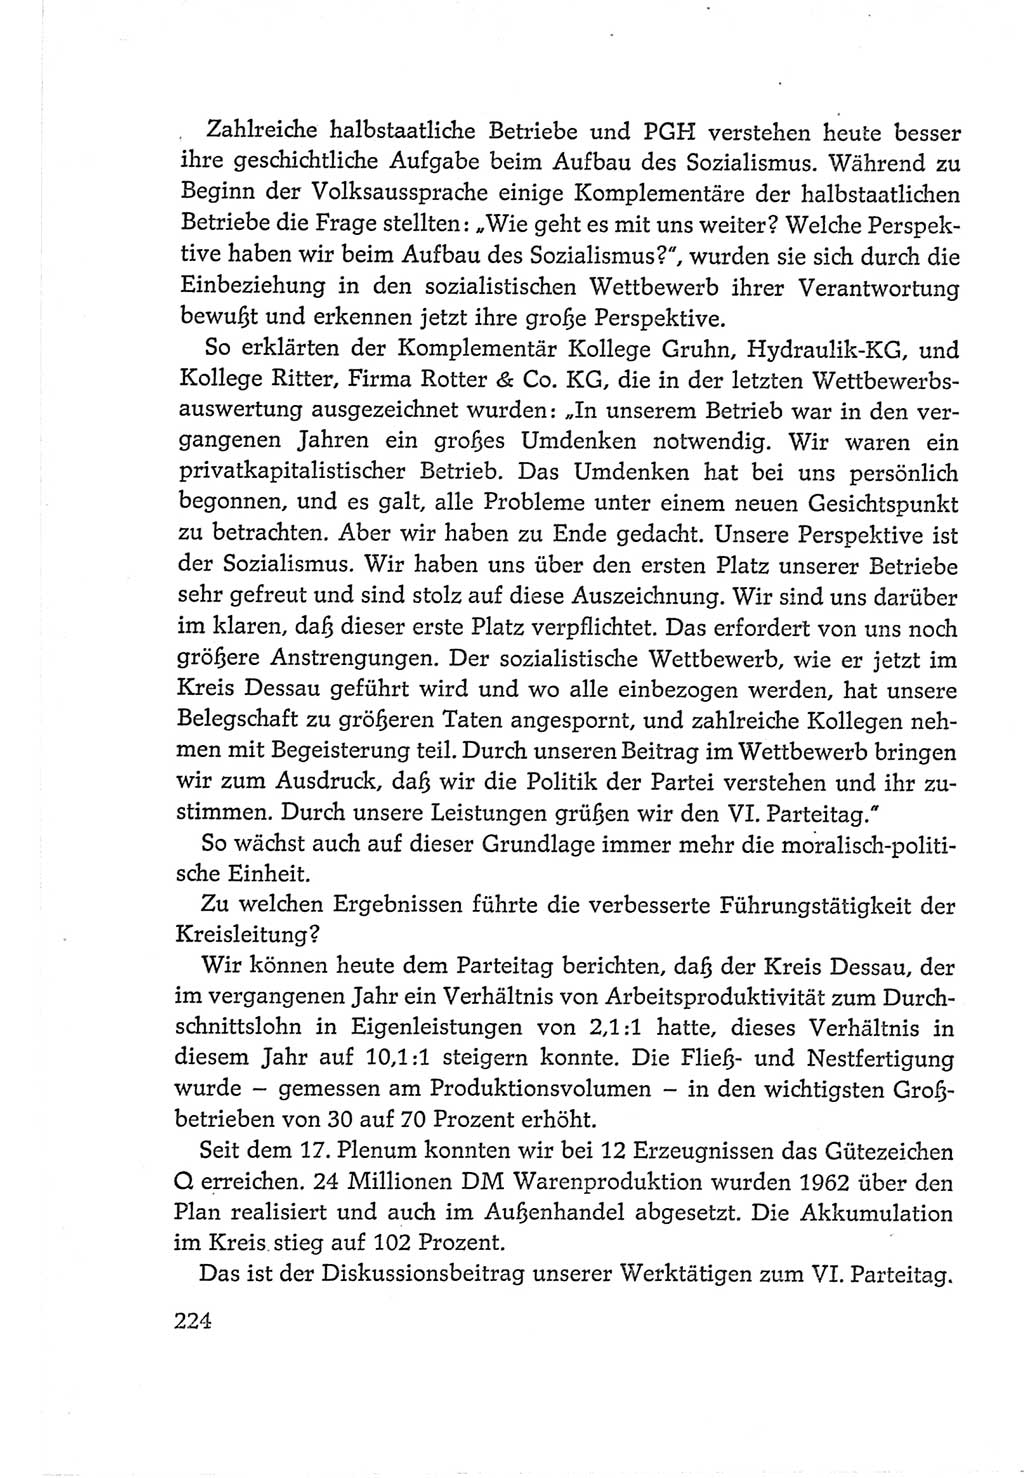 Protokoll der Verhandlungen des Ⅵ. Parteitages der Sozialistischen Einheitspartei Deutschlands (SED) [Deutsche Demokratische Republik (DDR)] 1963, Band Ⅱ, Seite 224 (Prot. Verh. Ⅵ. PT SED DDR 1963, Bd. Ⅱ, S. 224)